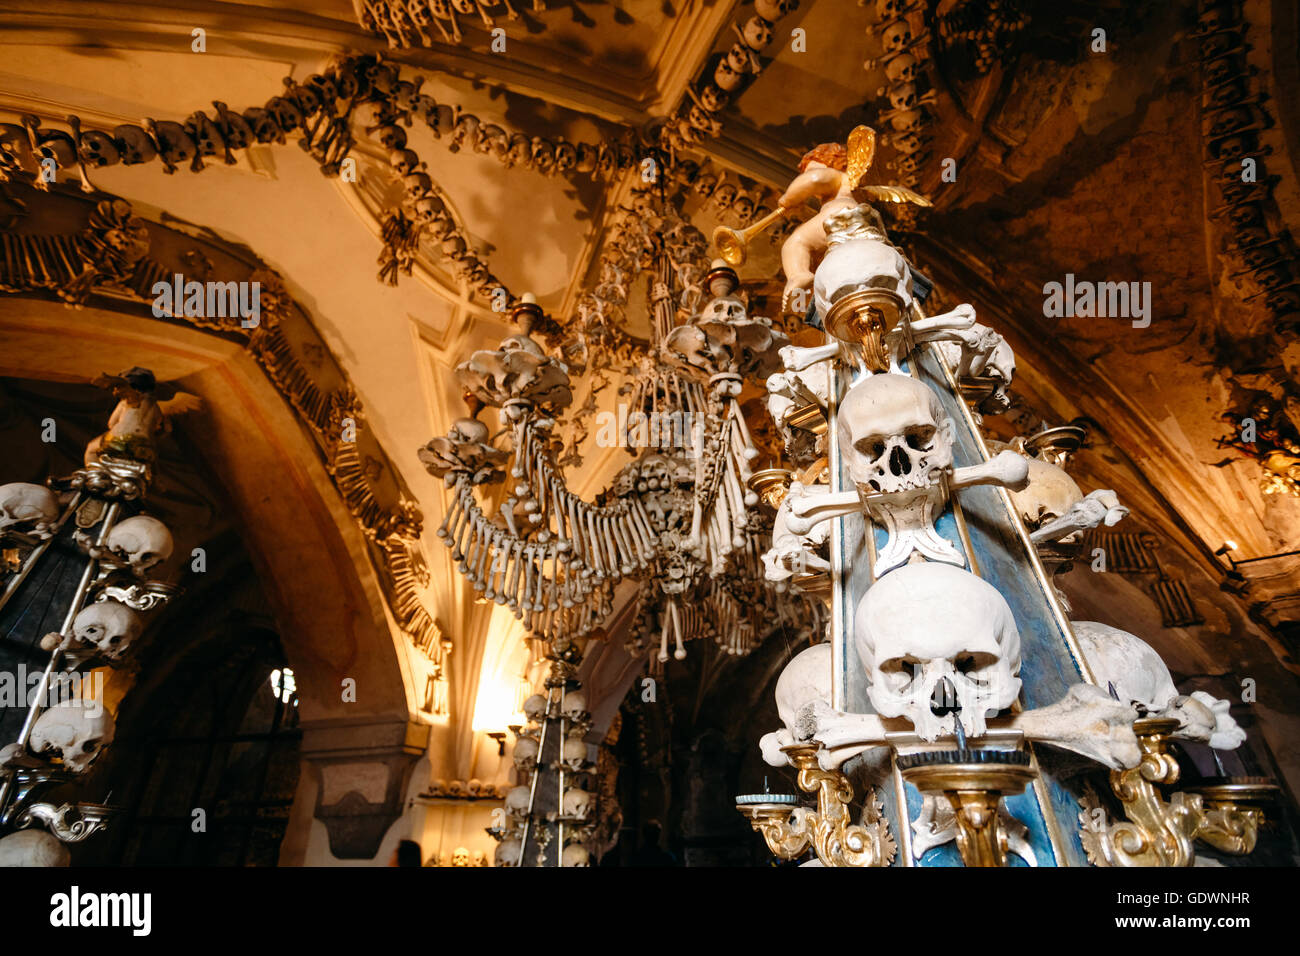 Alte Knochen, Schädel In Sedlec Karner (Beinhaus), Kutna Hora, Tschechien. Beinhaus enthalten Skelette von zwischen 40.000-70.000 Menschen, Wh Stockfoto